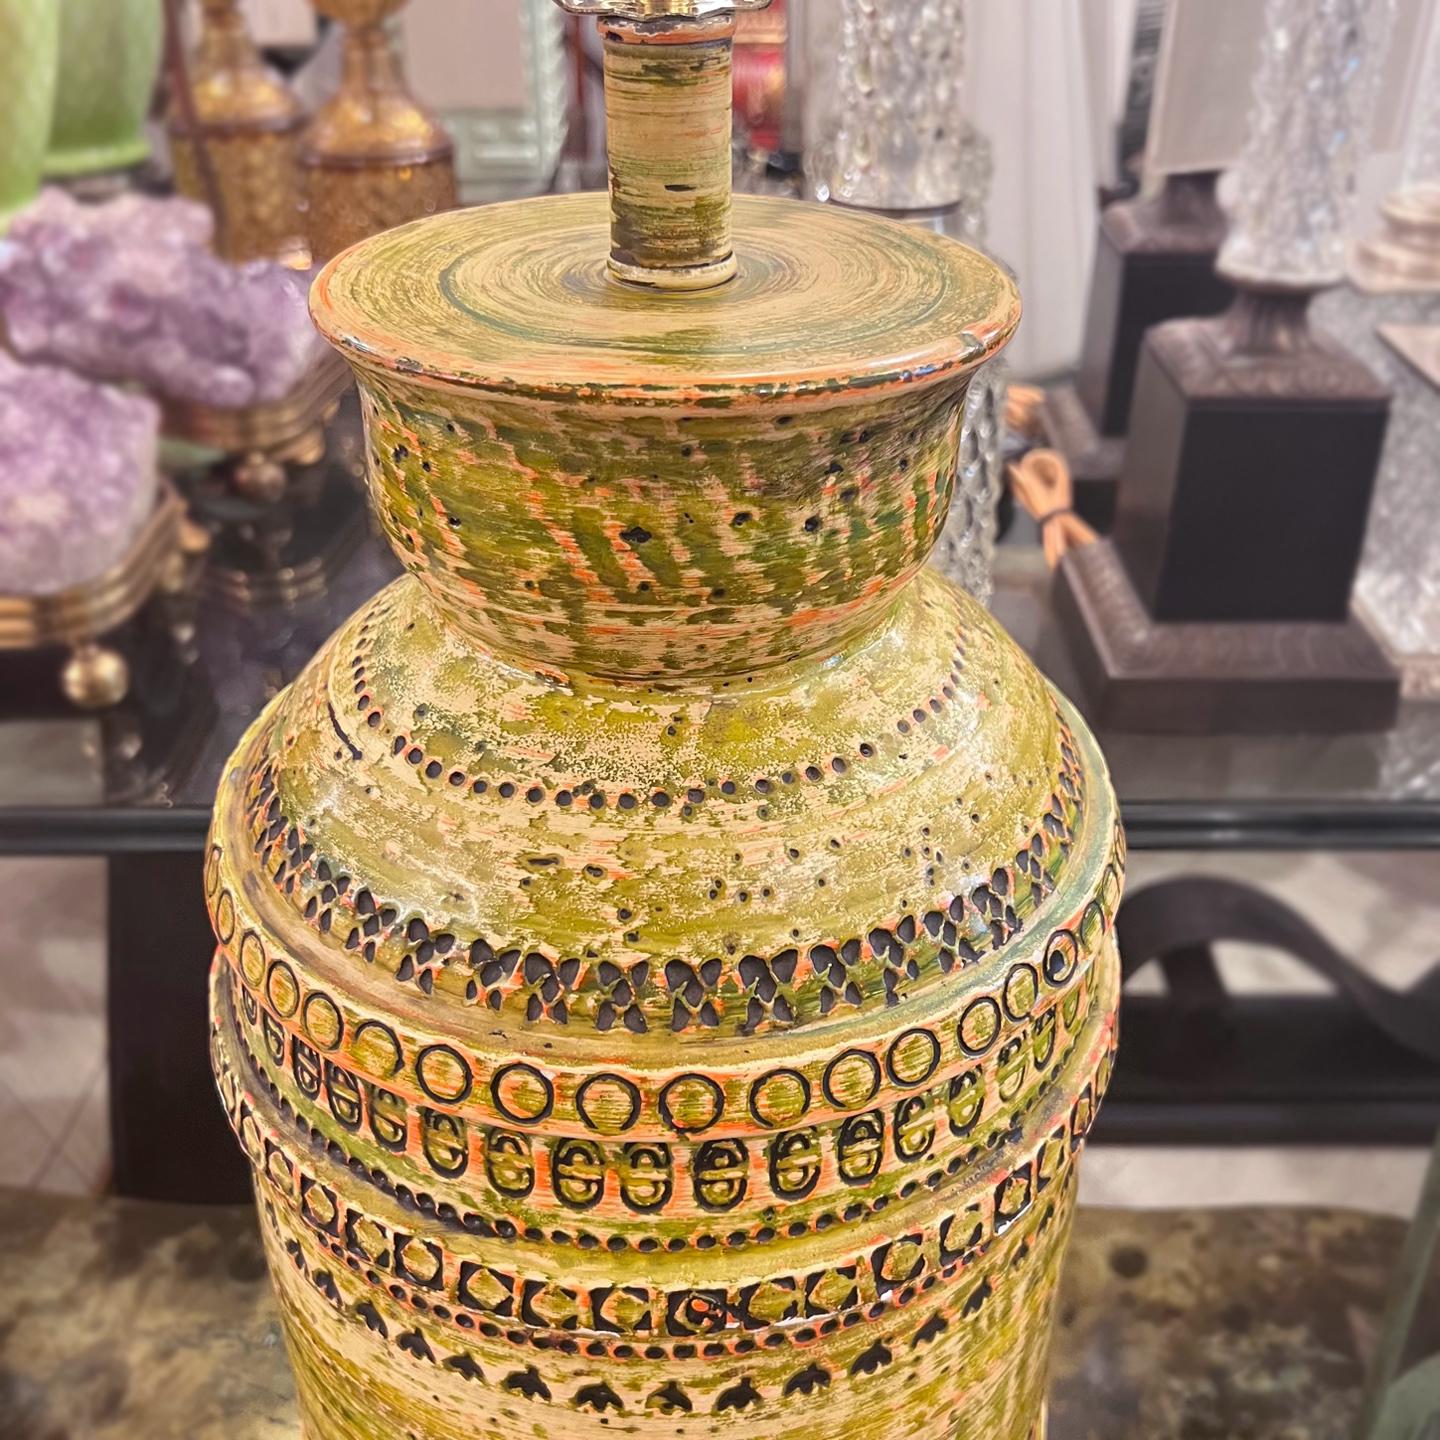 Lampe de table en céramique texturée et émaillée, datant du milieu des années 1960, avec base en bronze.

Mesures :
Hauteur du corps : 25,5